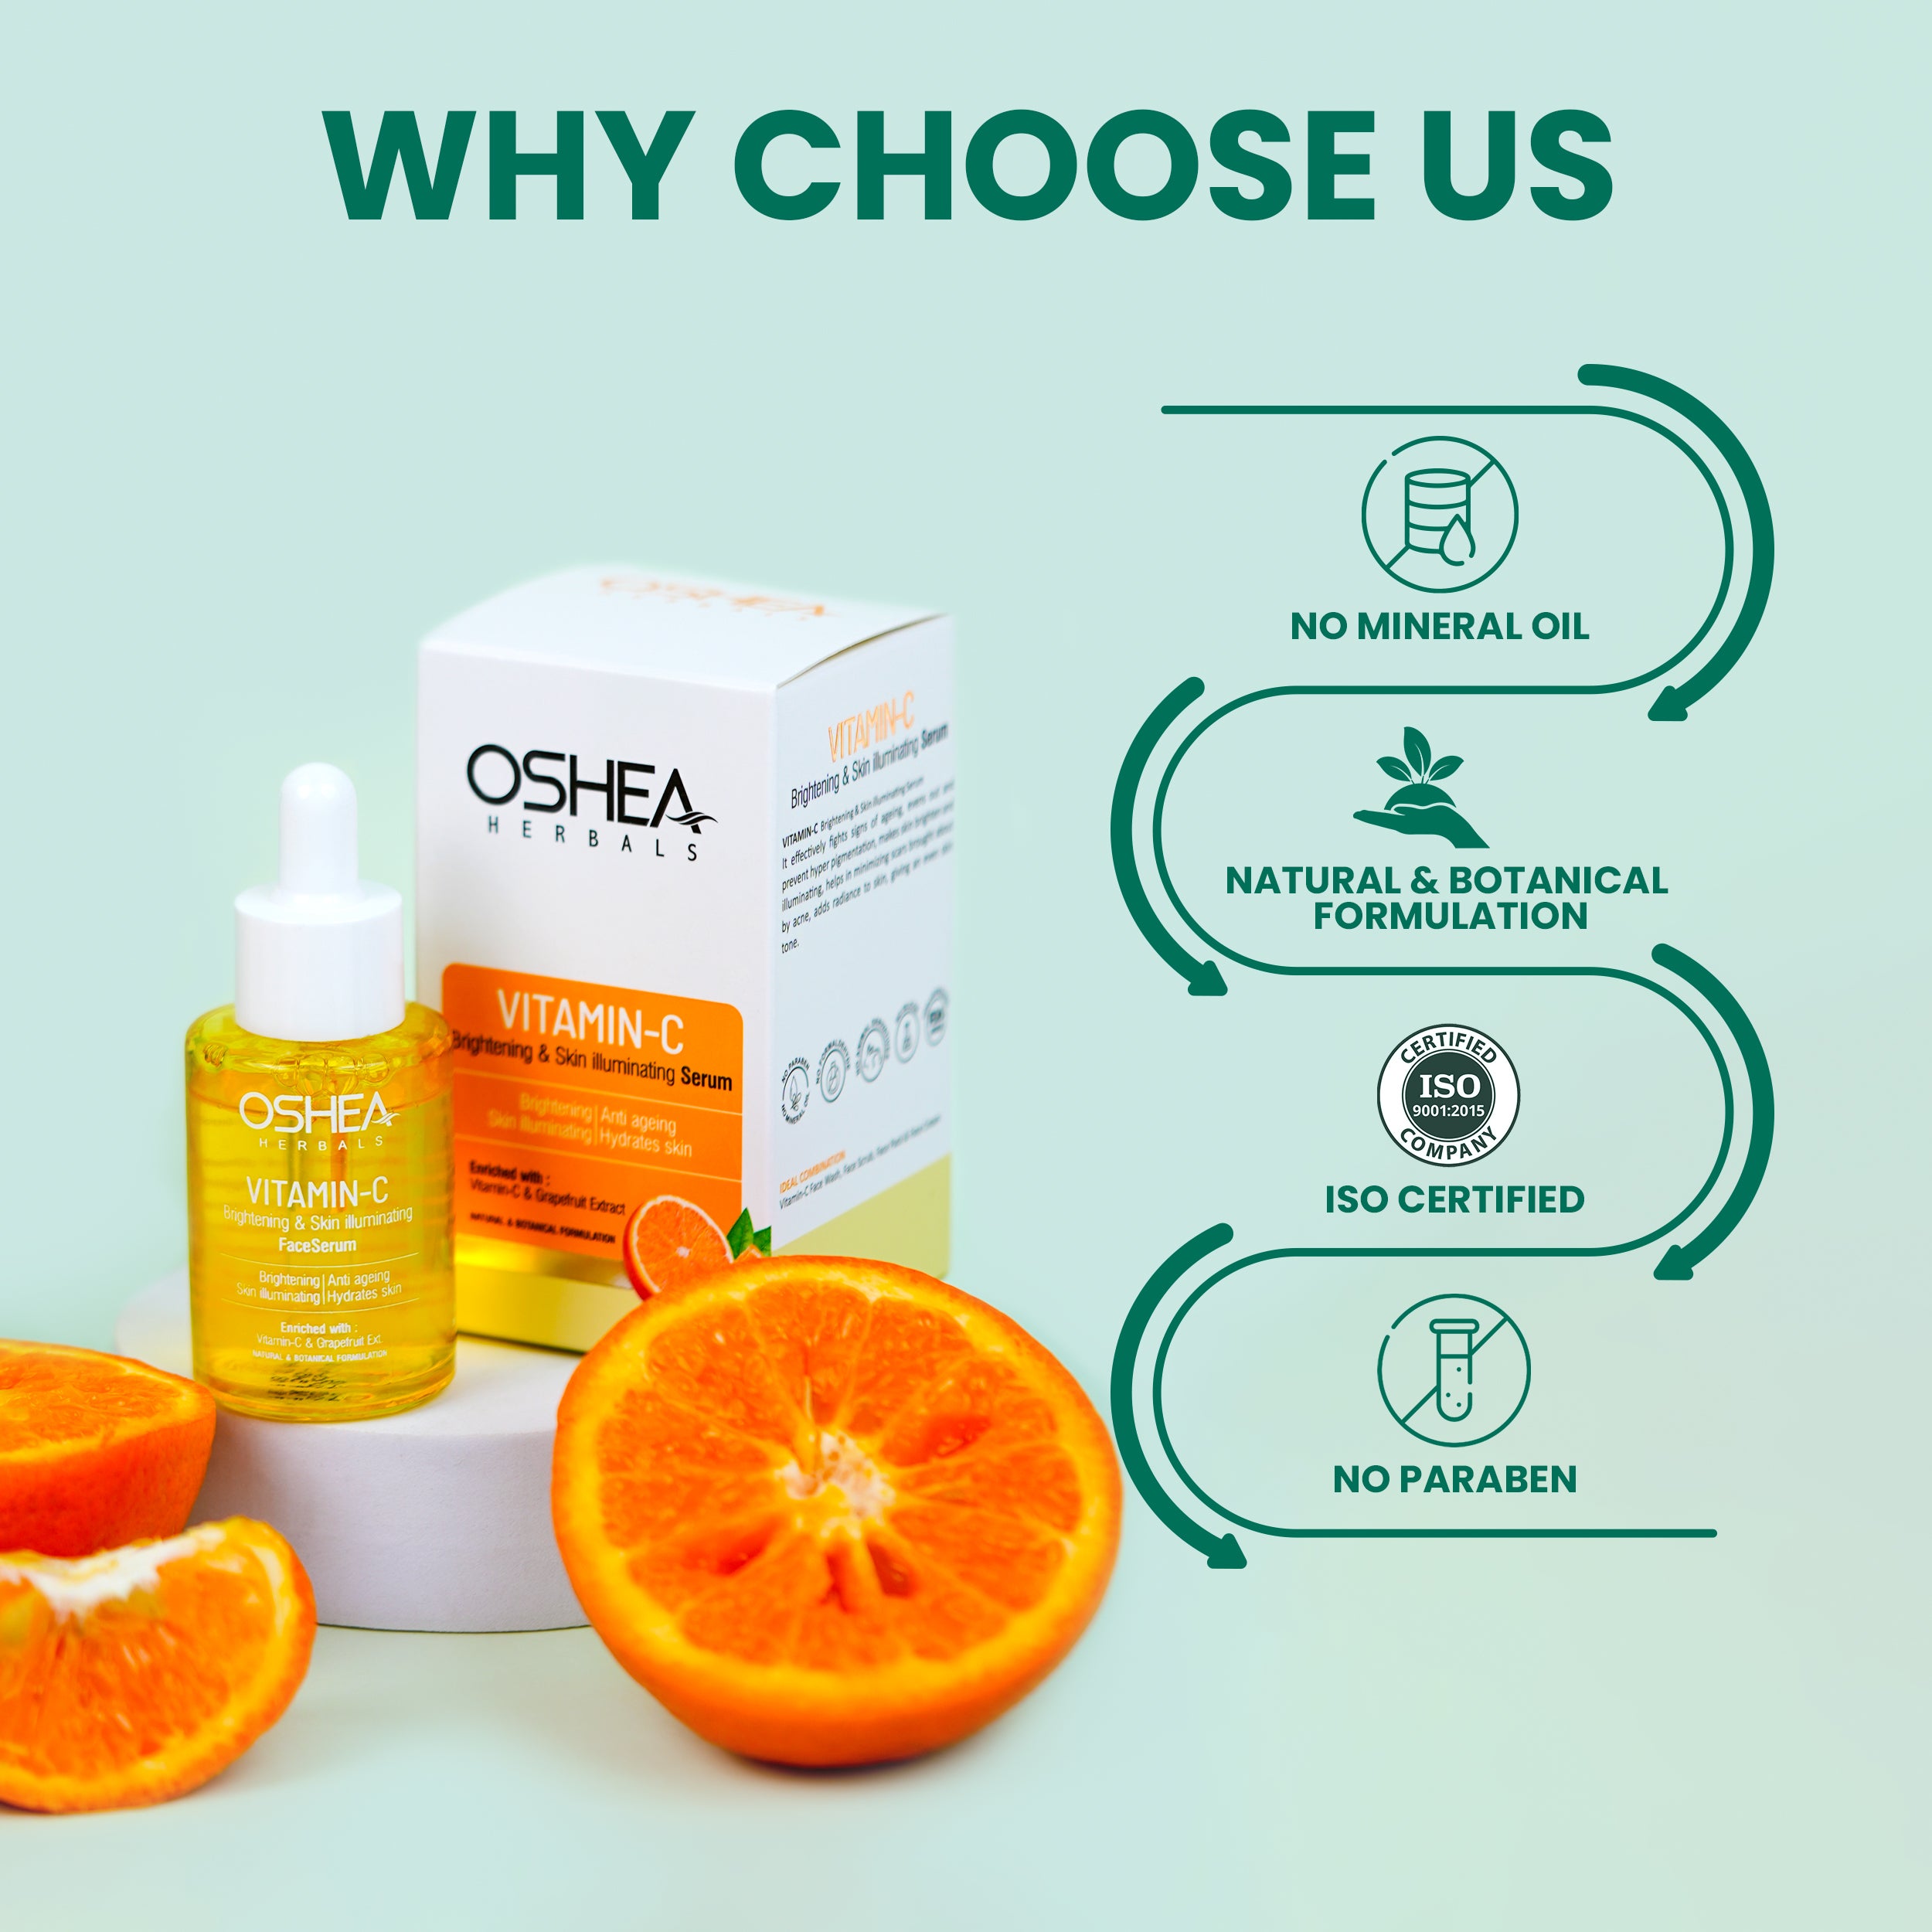 Why choose us Vitamin C Brightening_Skin Illuminating Serum Oshea HERBALS